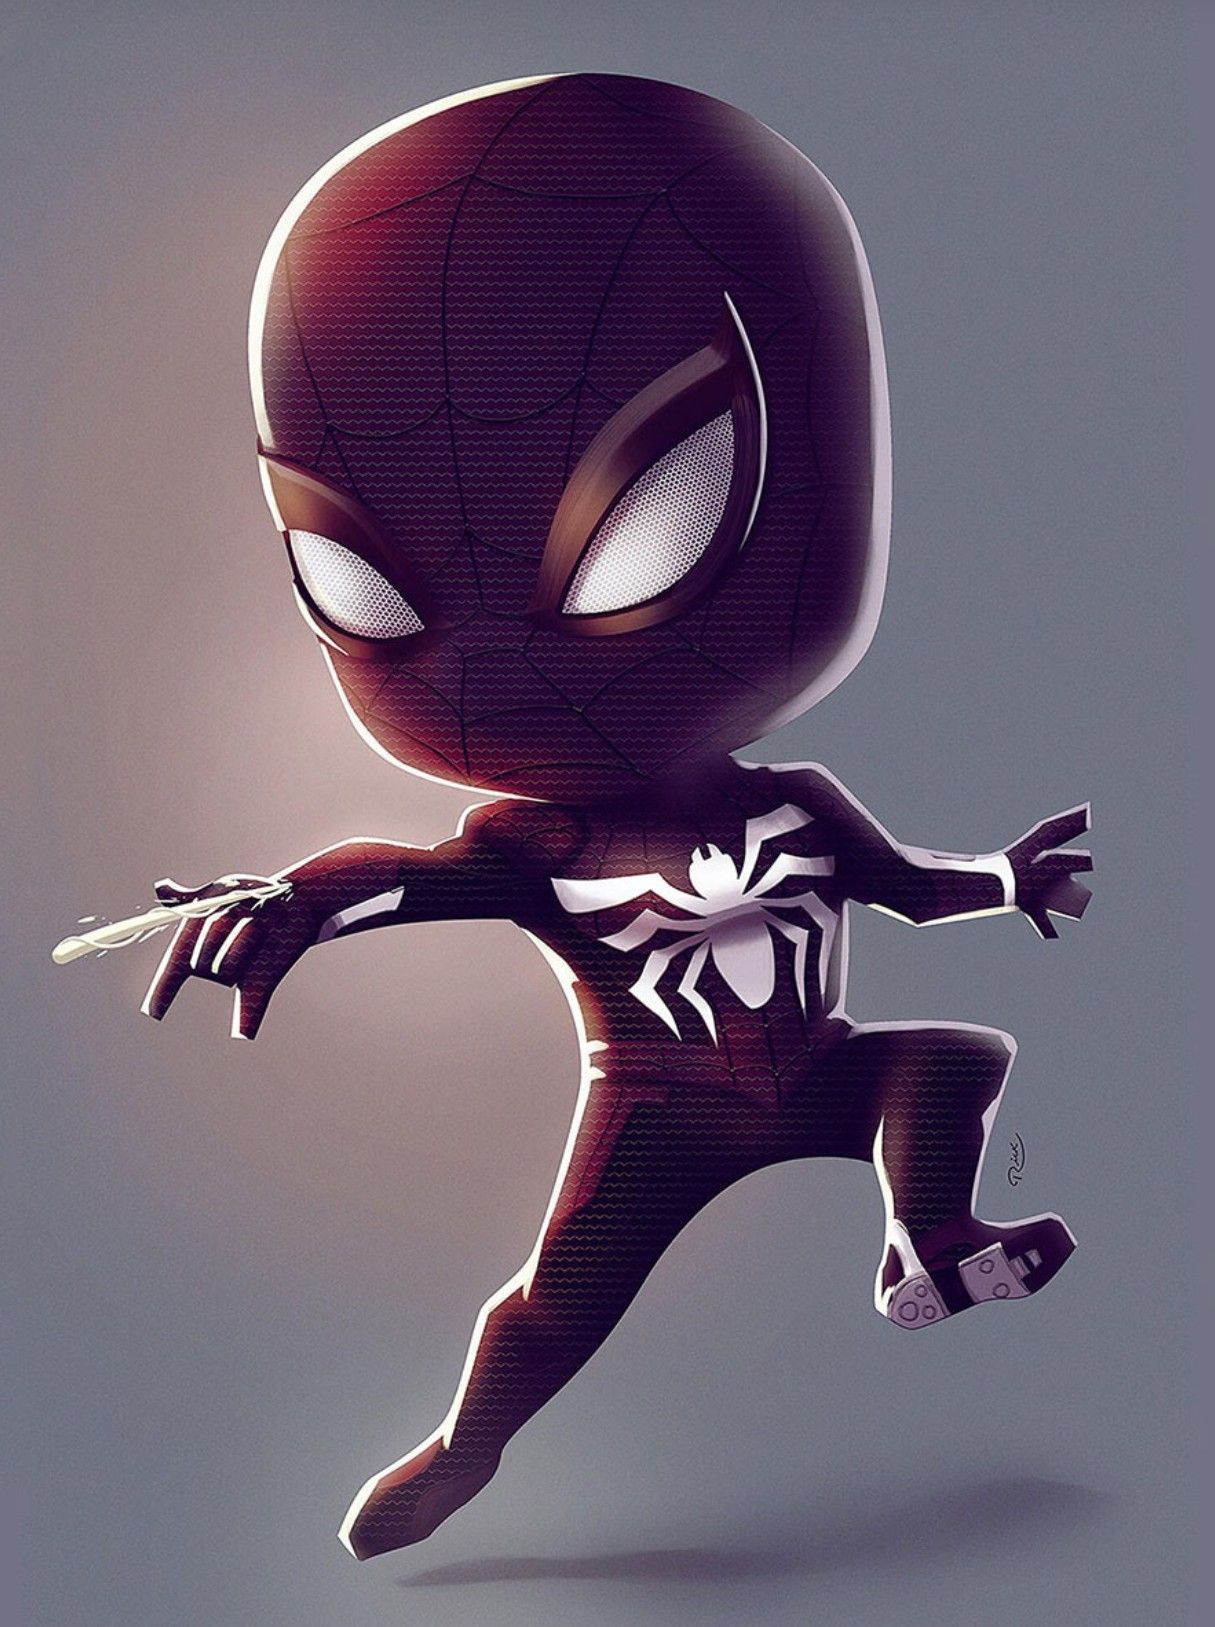 Marvel comics wallpaper, Spiderman .in.com